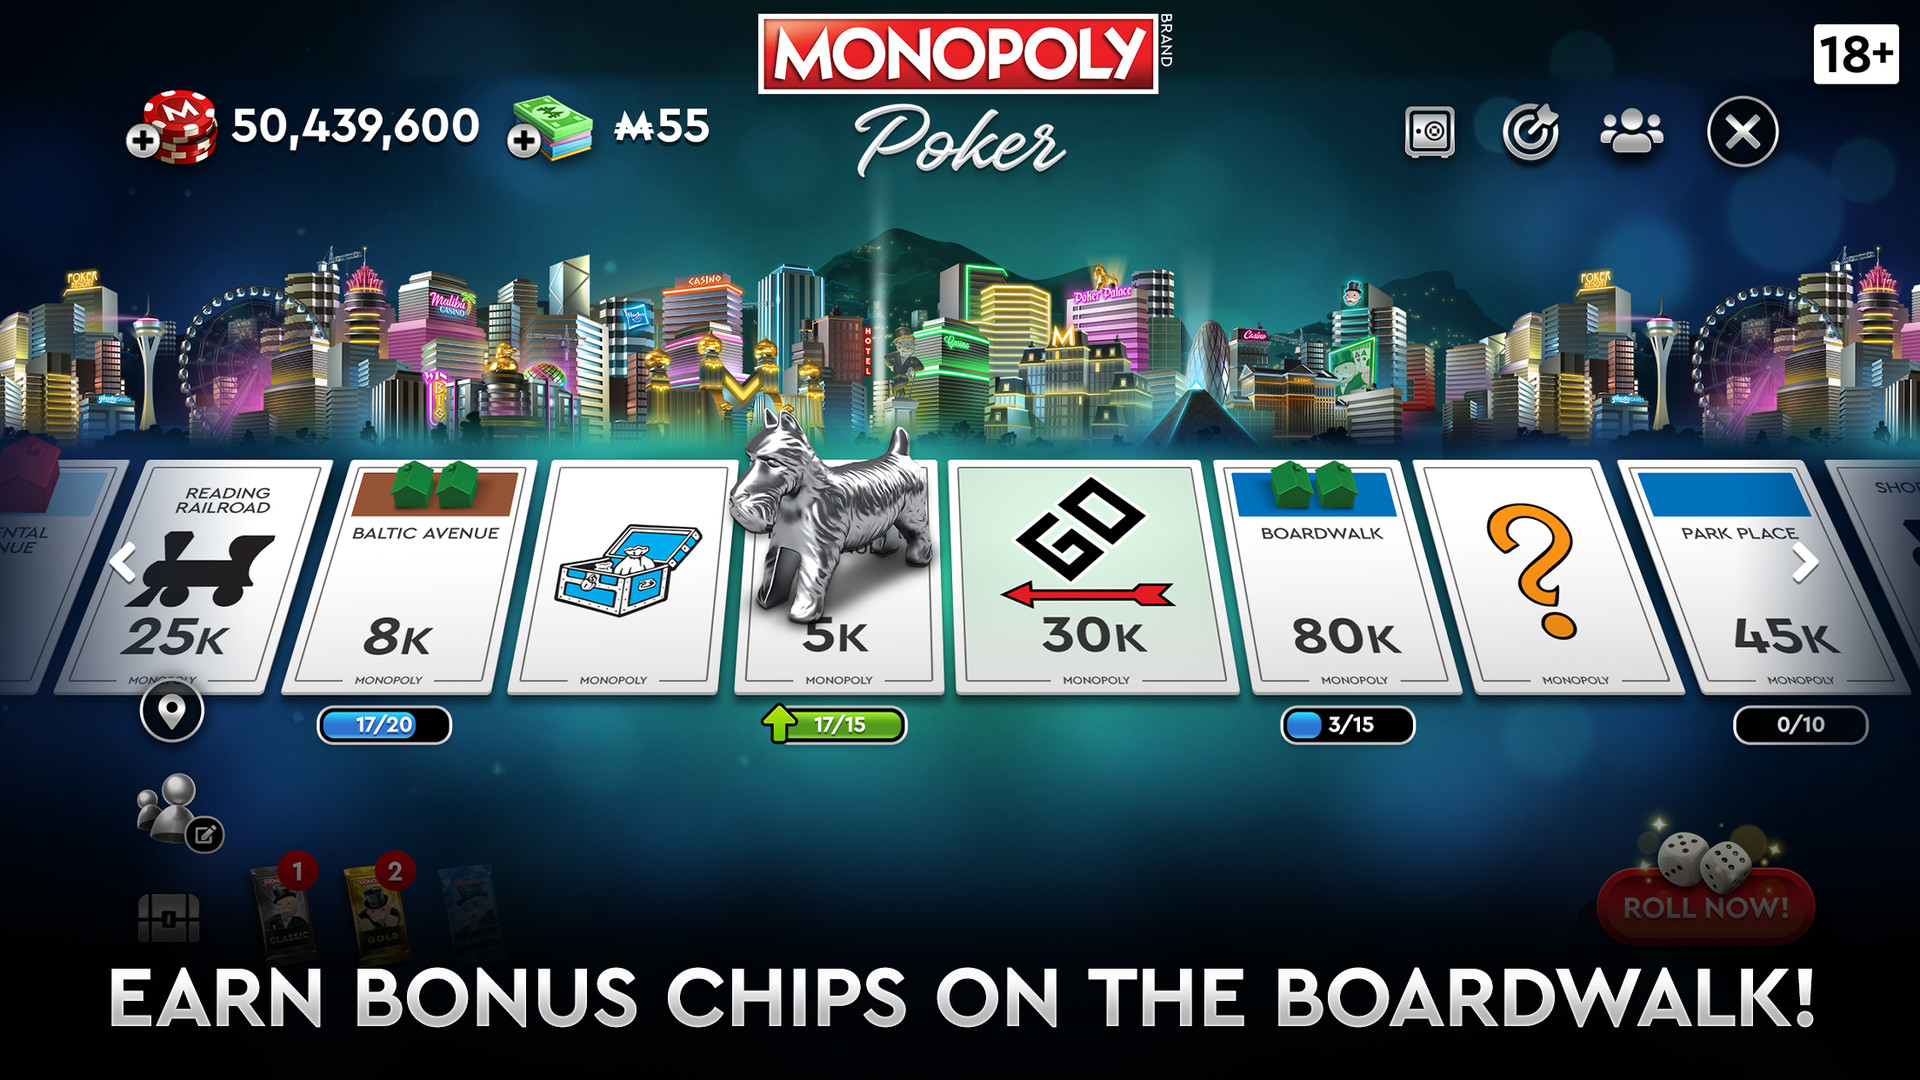 monopoly poker pc